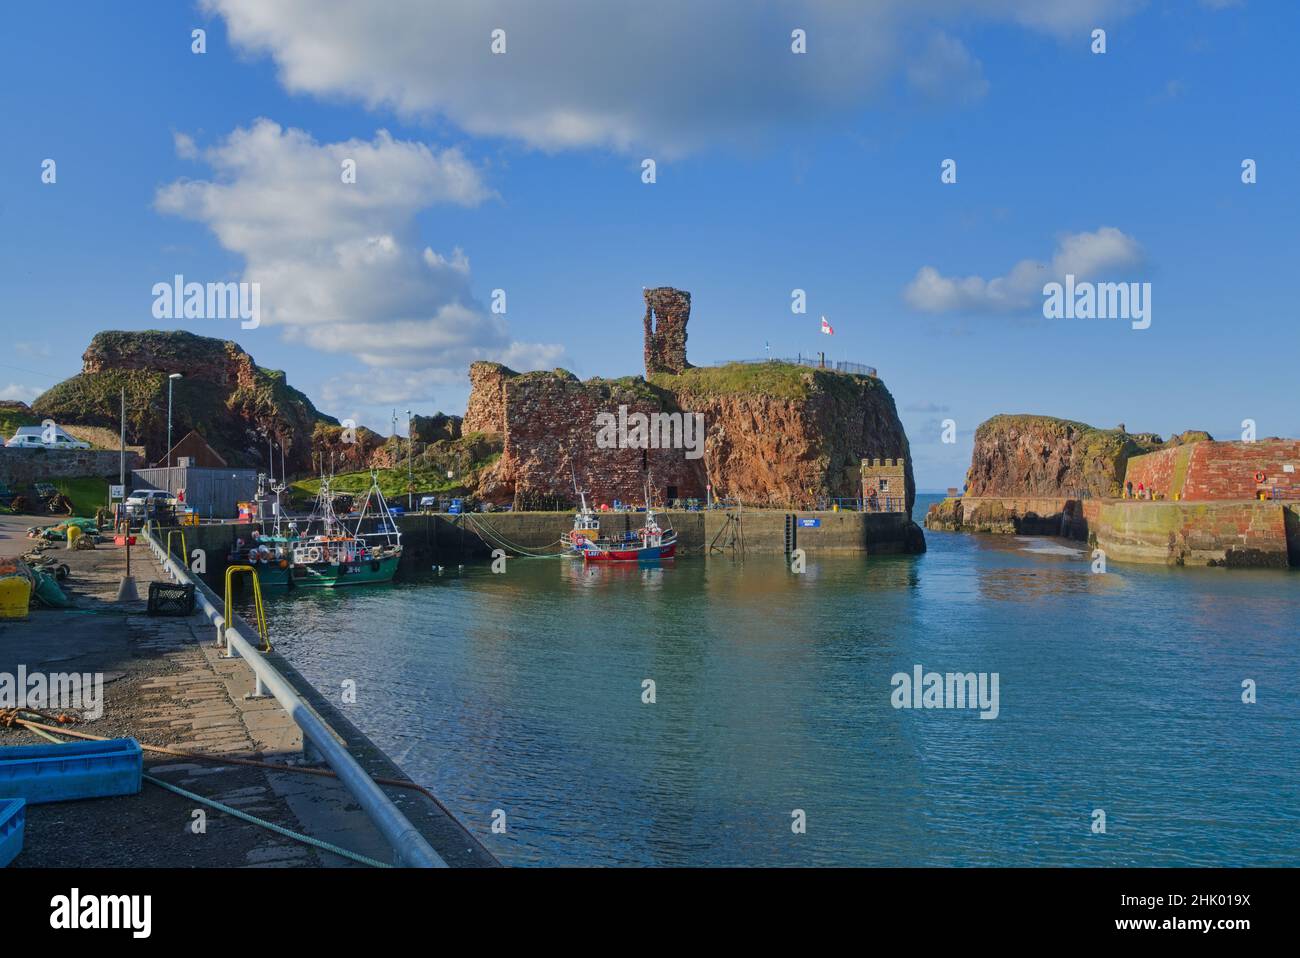 Affacciato a ovest sul porto di Dunbar, si trovano le antiche rovine storiche del castello. Bella giornata limpida. Barche colorate da pesca. Lothian orientale, Scozia, Regno Unito Foto Stock